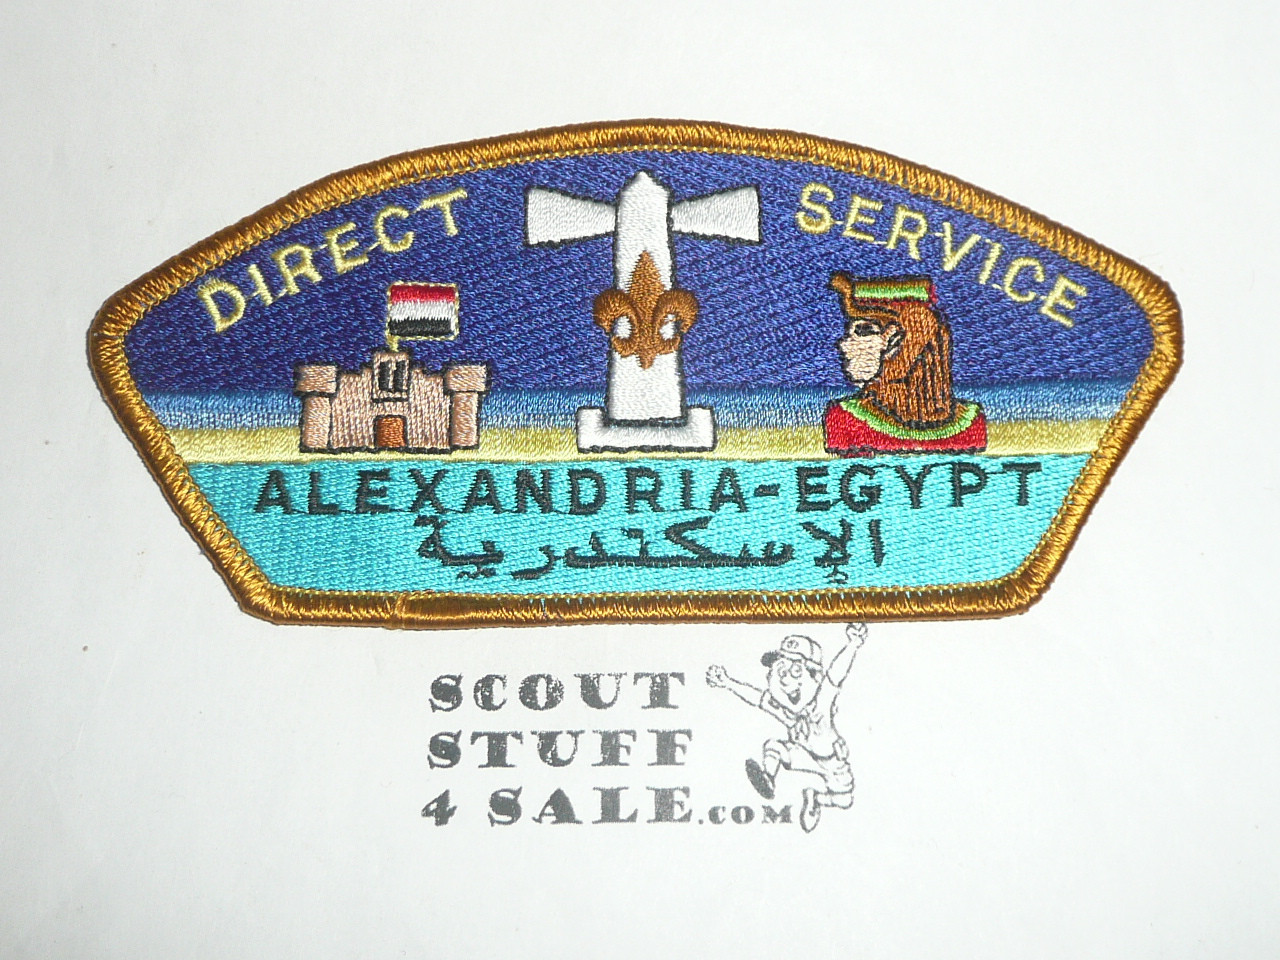 Direct Service Council EGYPT s4 CSP - Scout